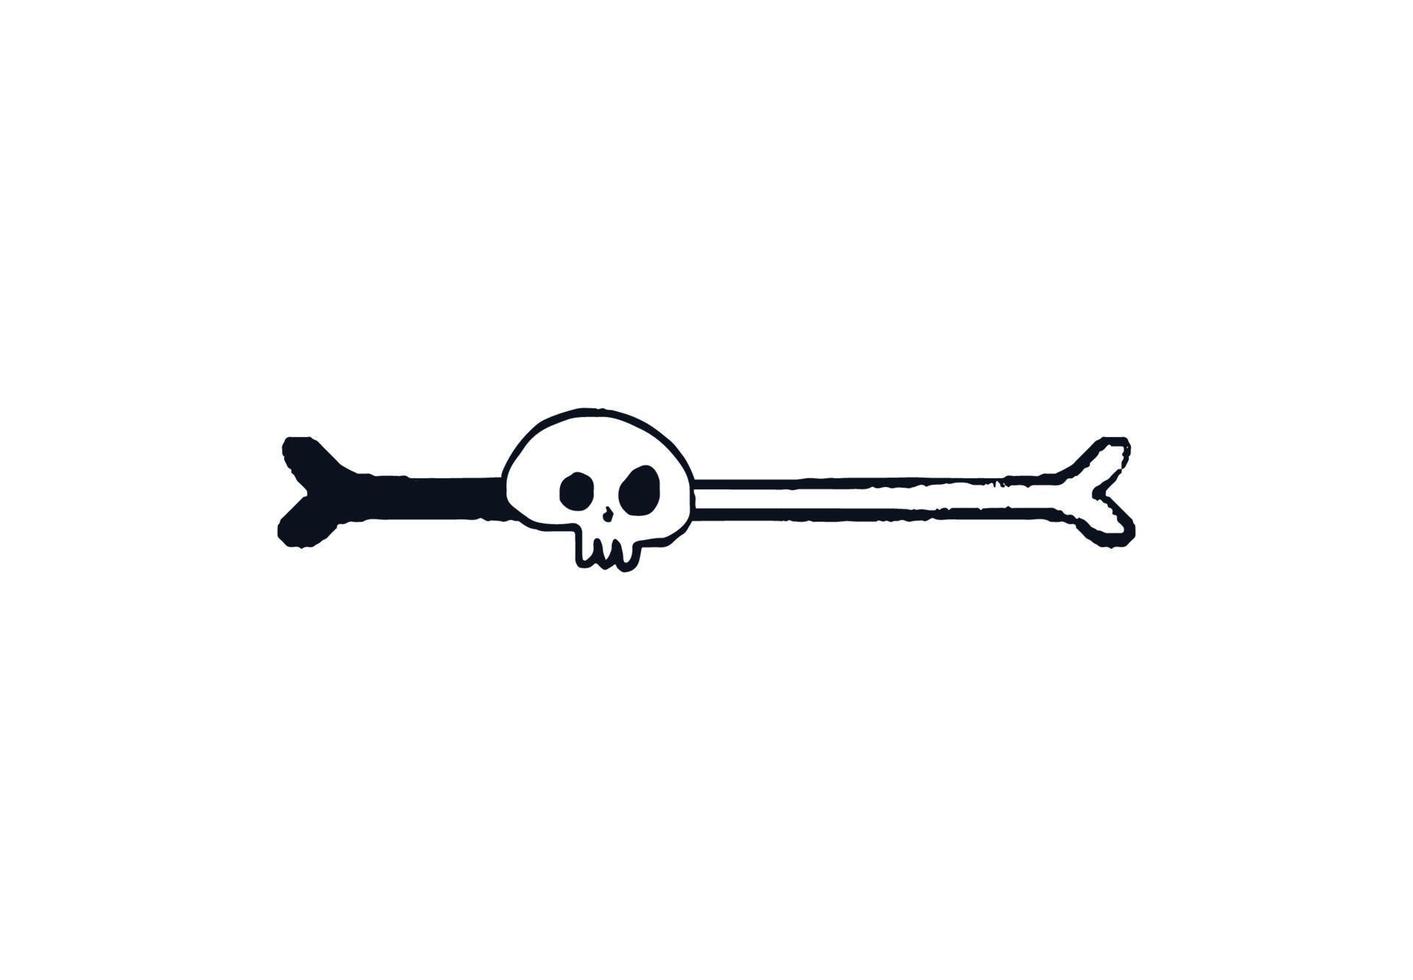 barra de carregamento de osso e crânio. doodle osso da barra de progresso com indicador de download desenhado à mão do crânio. ilustração em vetor estoque preto no esboço branco.